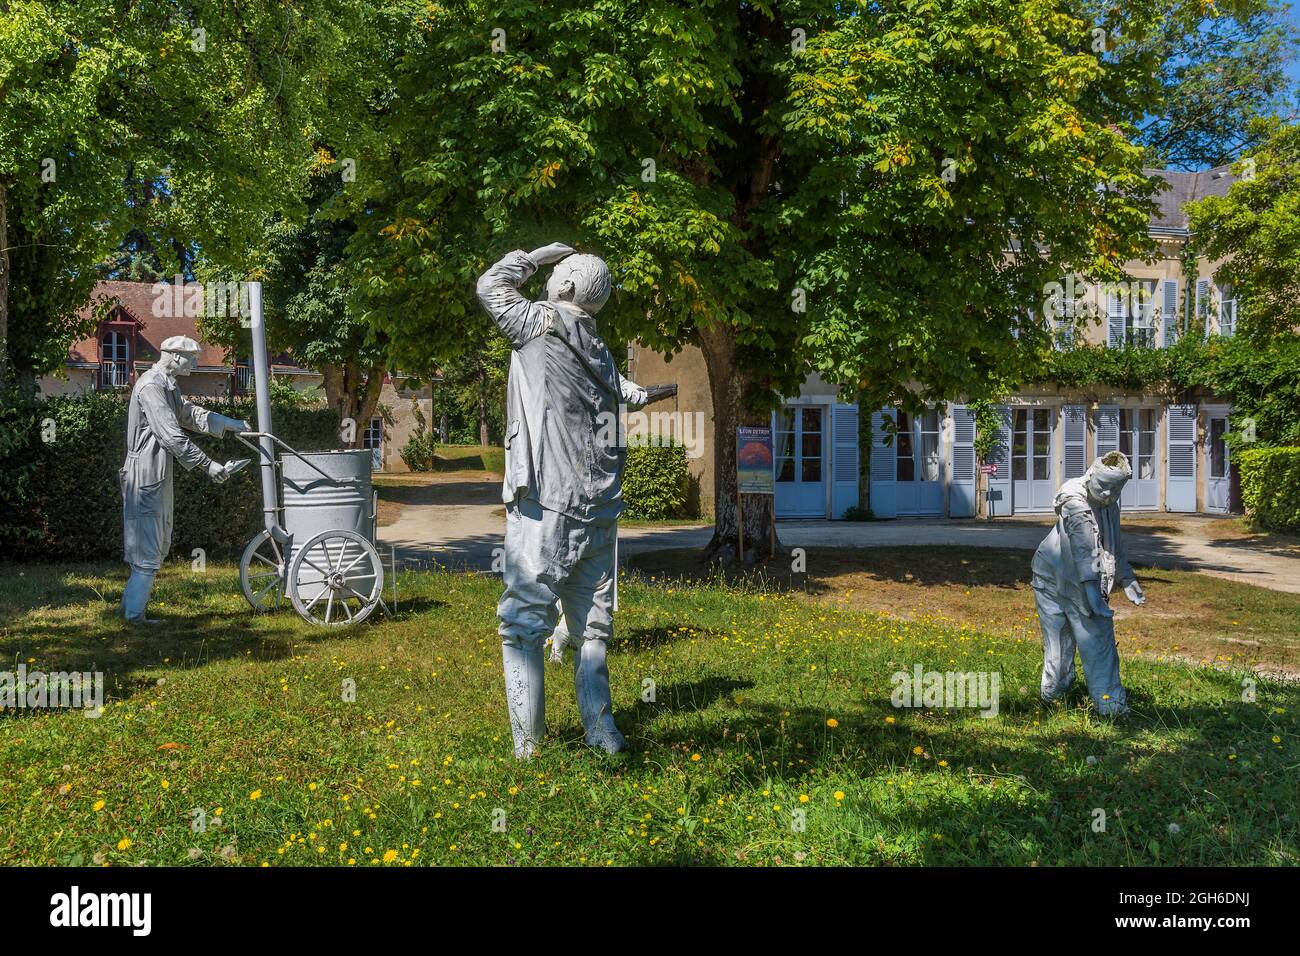 Esculturas de tamaño natural de Marc Bertrand y Claude Grollimund en los jardines de la Mairie / Ayuntamiento de Eguzon-Chantome, Indre (36), Francia. Foto de stock